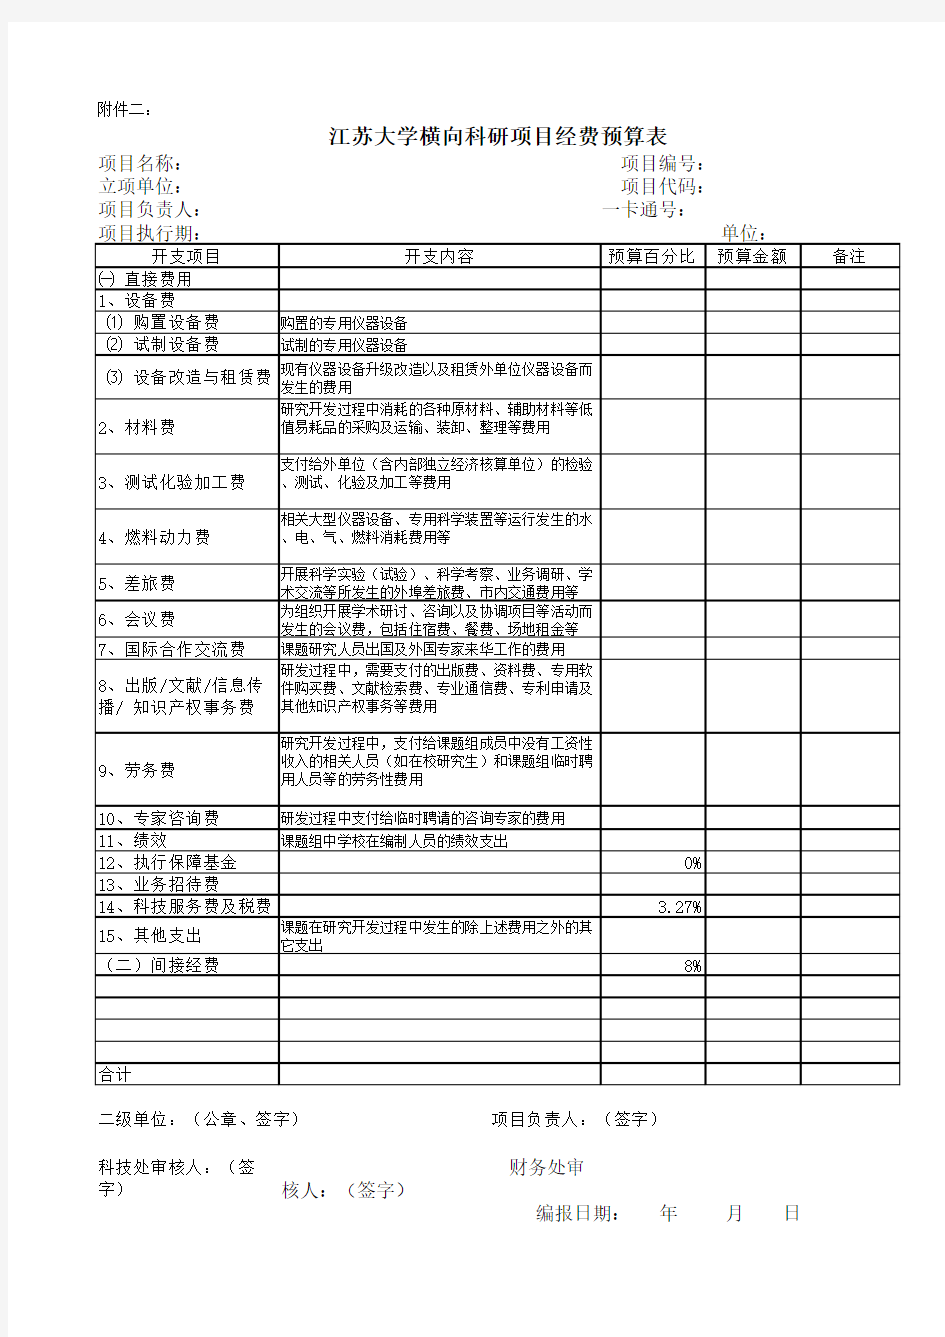 江苏大学横向科研项目经费预算表